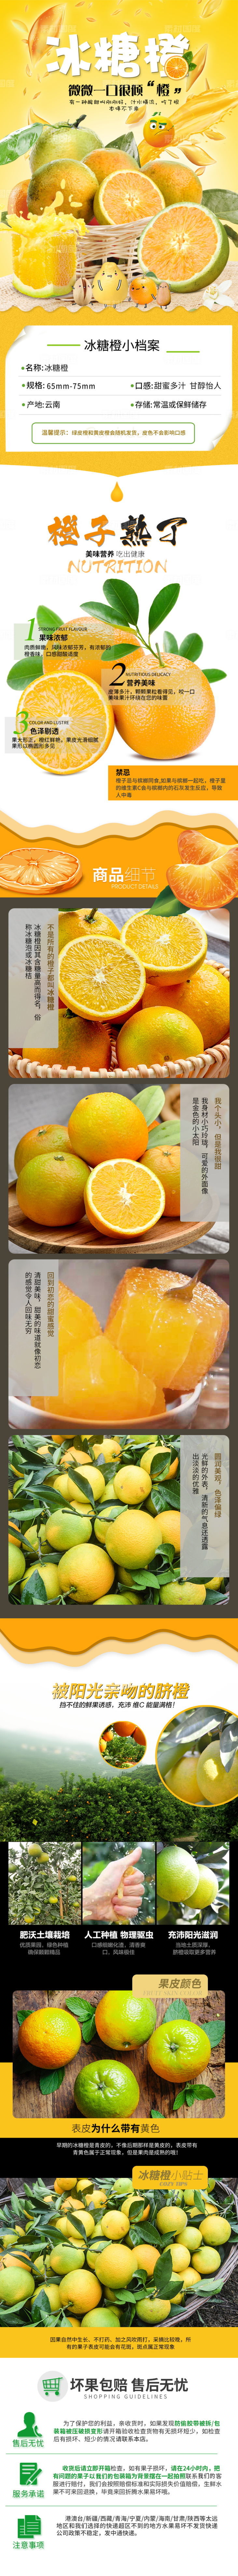 冰糖橙果味浓郁营养美味网页详情图